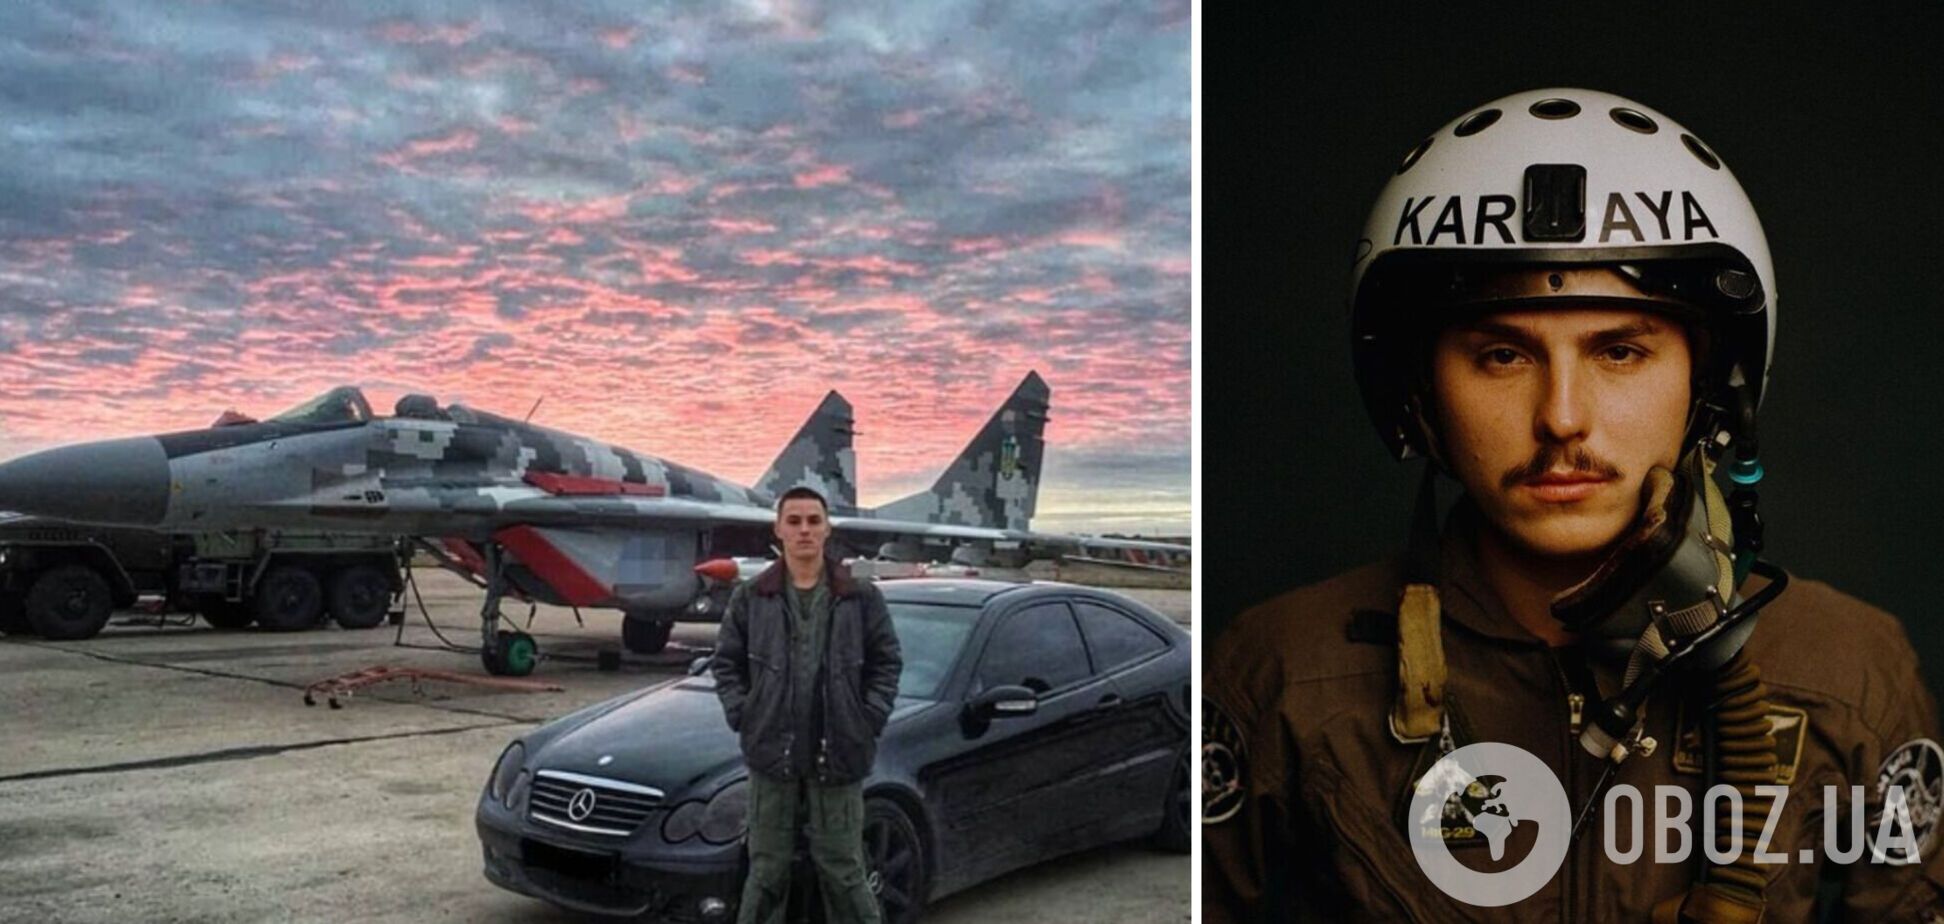 'Не вірю в цю легенду': пілот Karaya викрив російських льотчиків у брехні про бомбардування України 